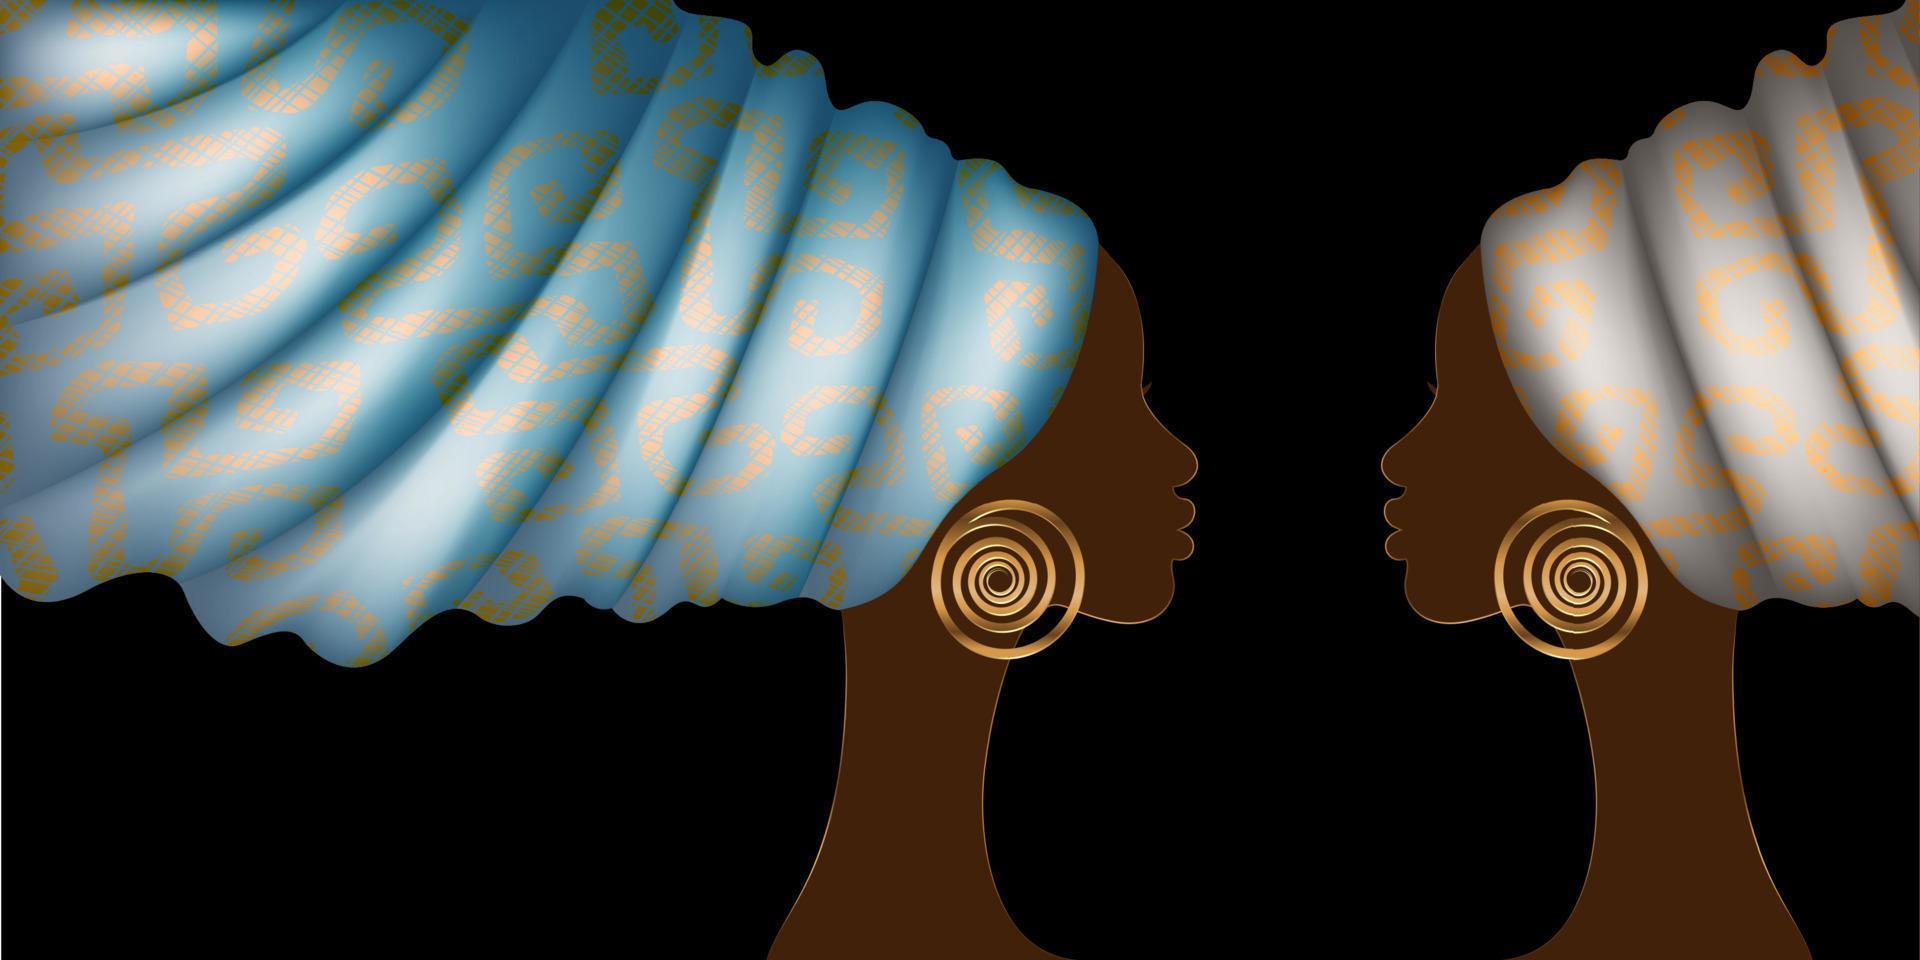 afrikaanse vrouwenbanner in mode wax print tulband, schoonheid van twee tweelingen. zwarte vrouw portret afro kapsels, haar jurk concept. Afrika etnische sjabloon geïsoleerd op zwarte achtergrond vector